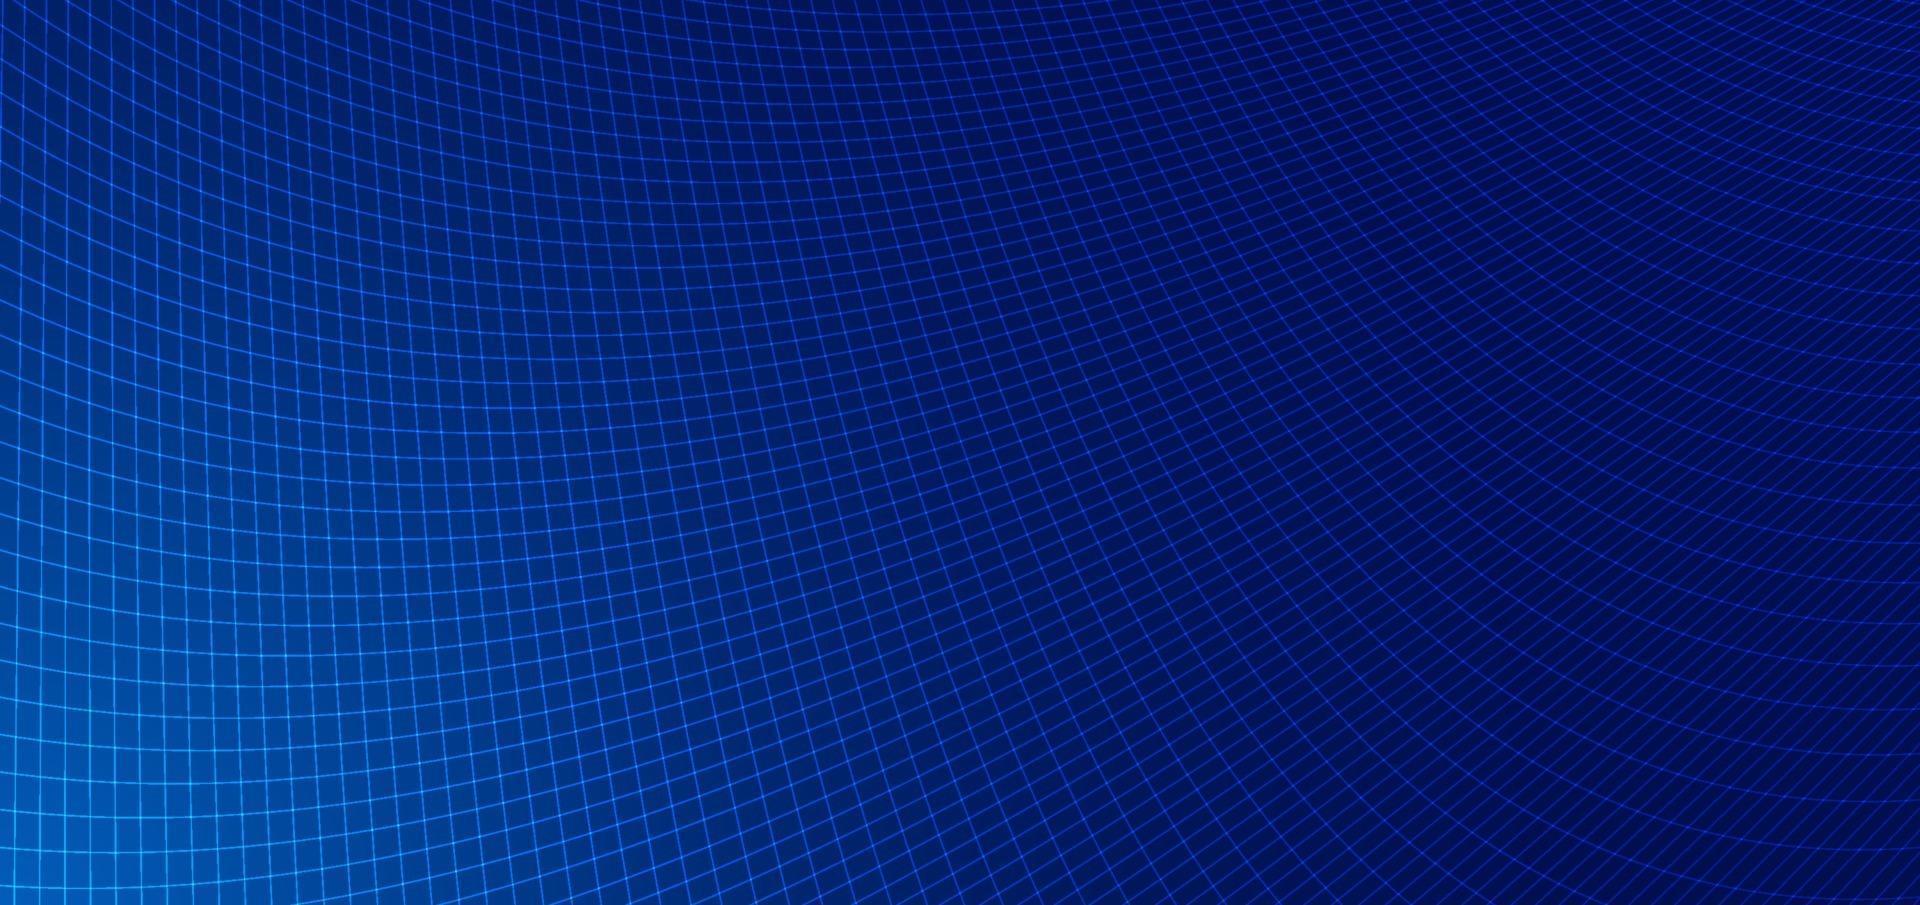 Resumen líneas azules cuadrícula patrón de malla perspectiva patrón curvo sobre fondo azul oscuro. vector